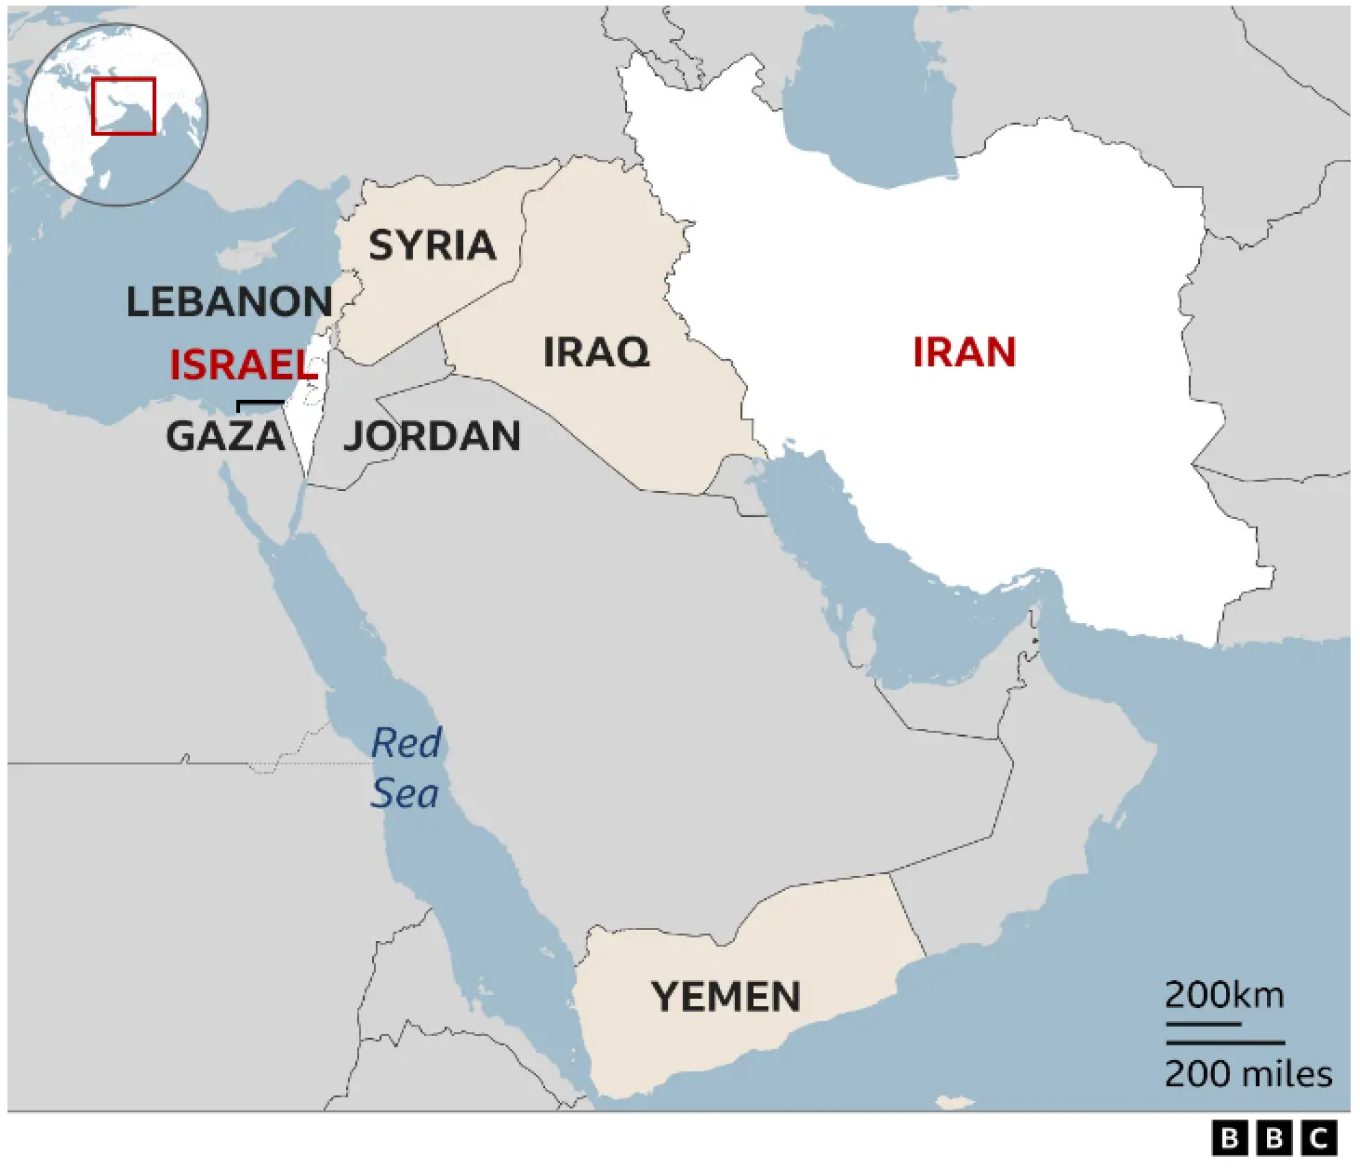 Επίθεση Ιράν σε Ισραήλ - Ανάλυση BBC: Γιατί είναι εχθροί; - Οι σύμμαχοι της Τεχεράνης, τα πυρηνικά και η Χαμάς